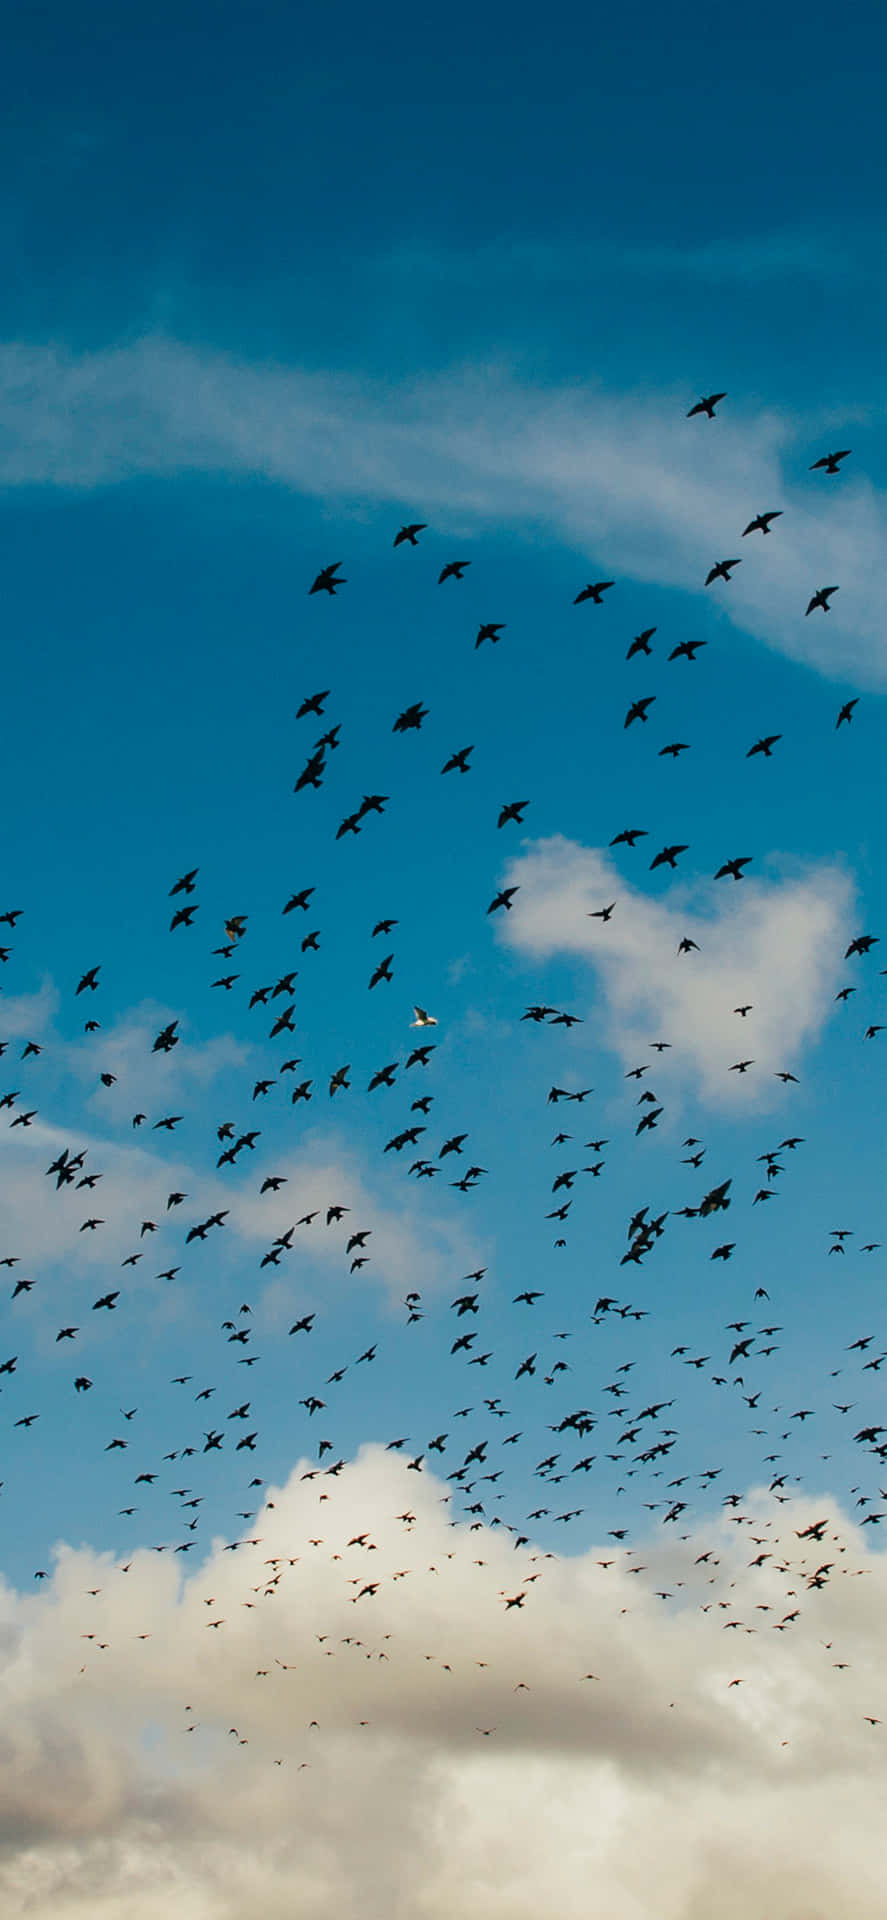 Flyttandefåglar Migration. Wallpaper